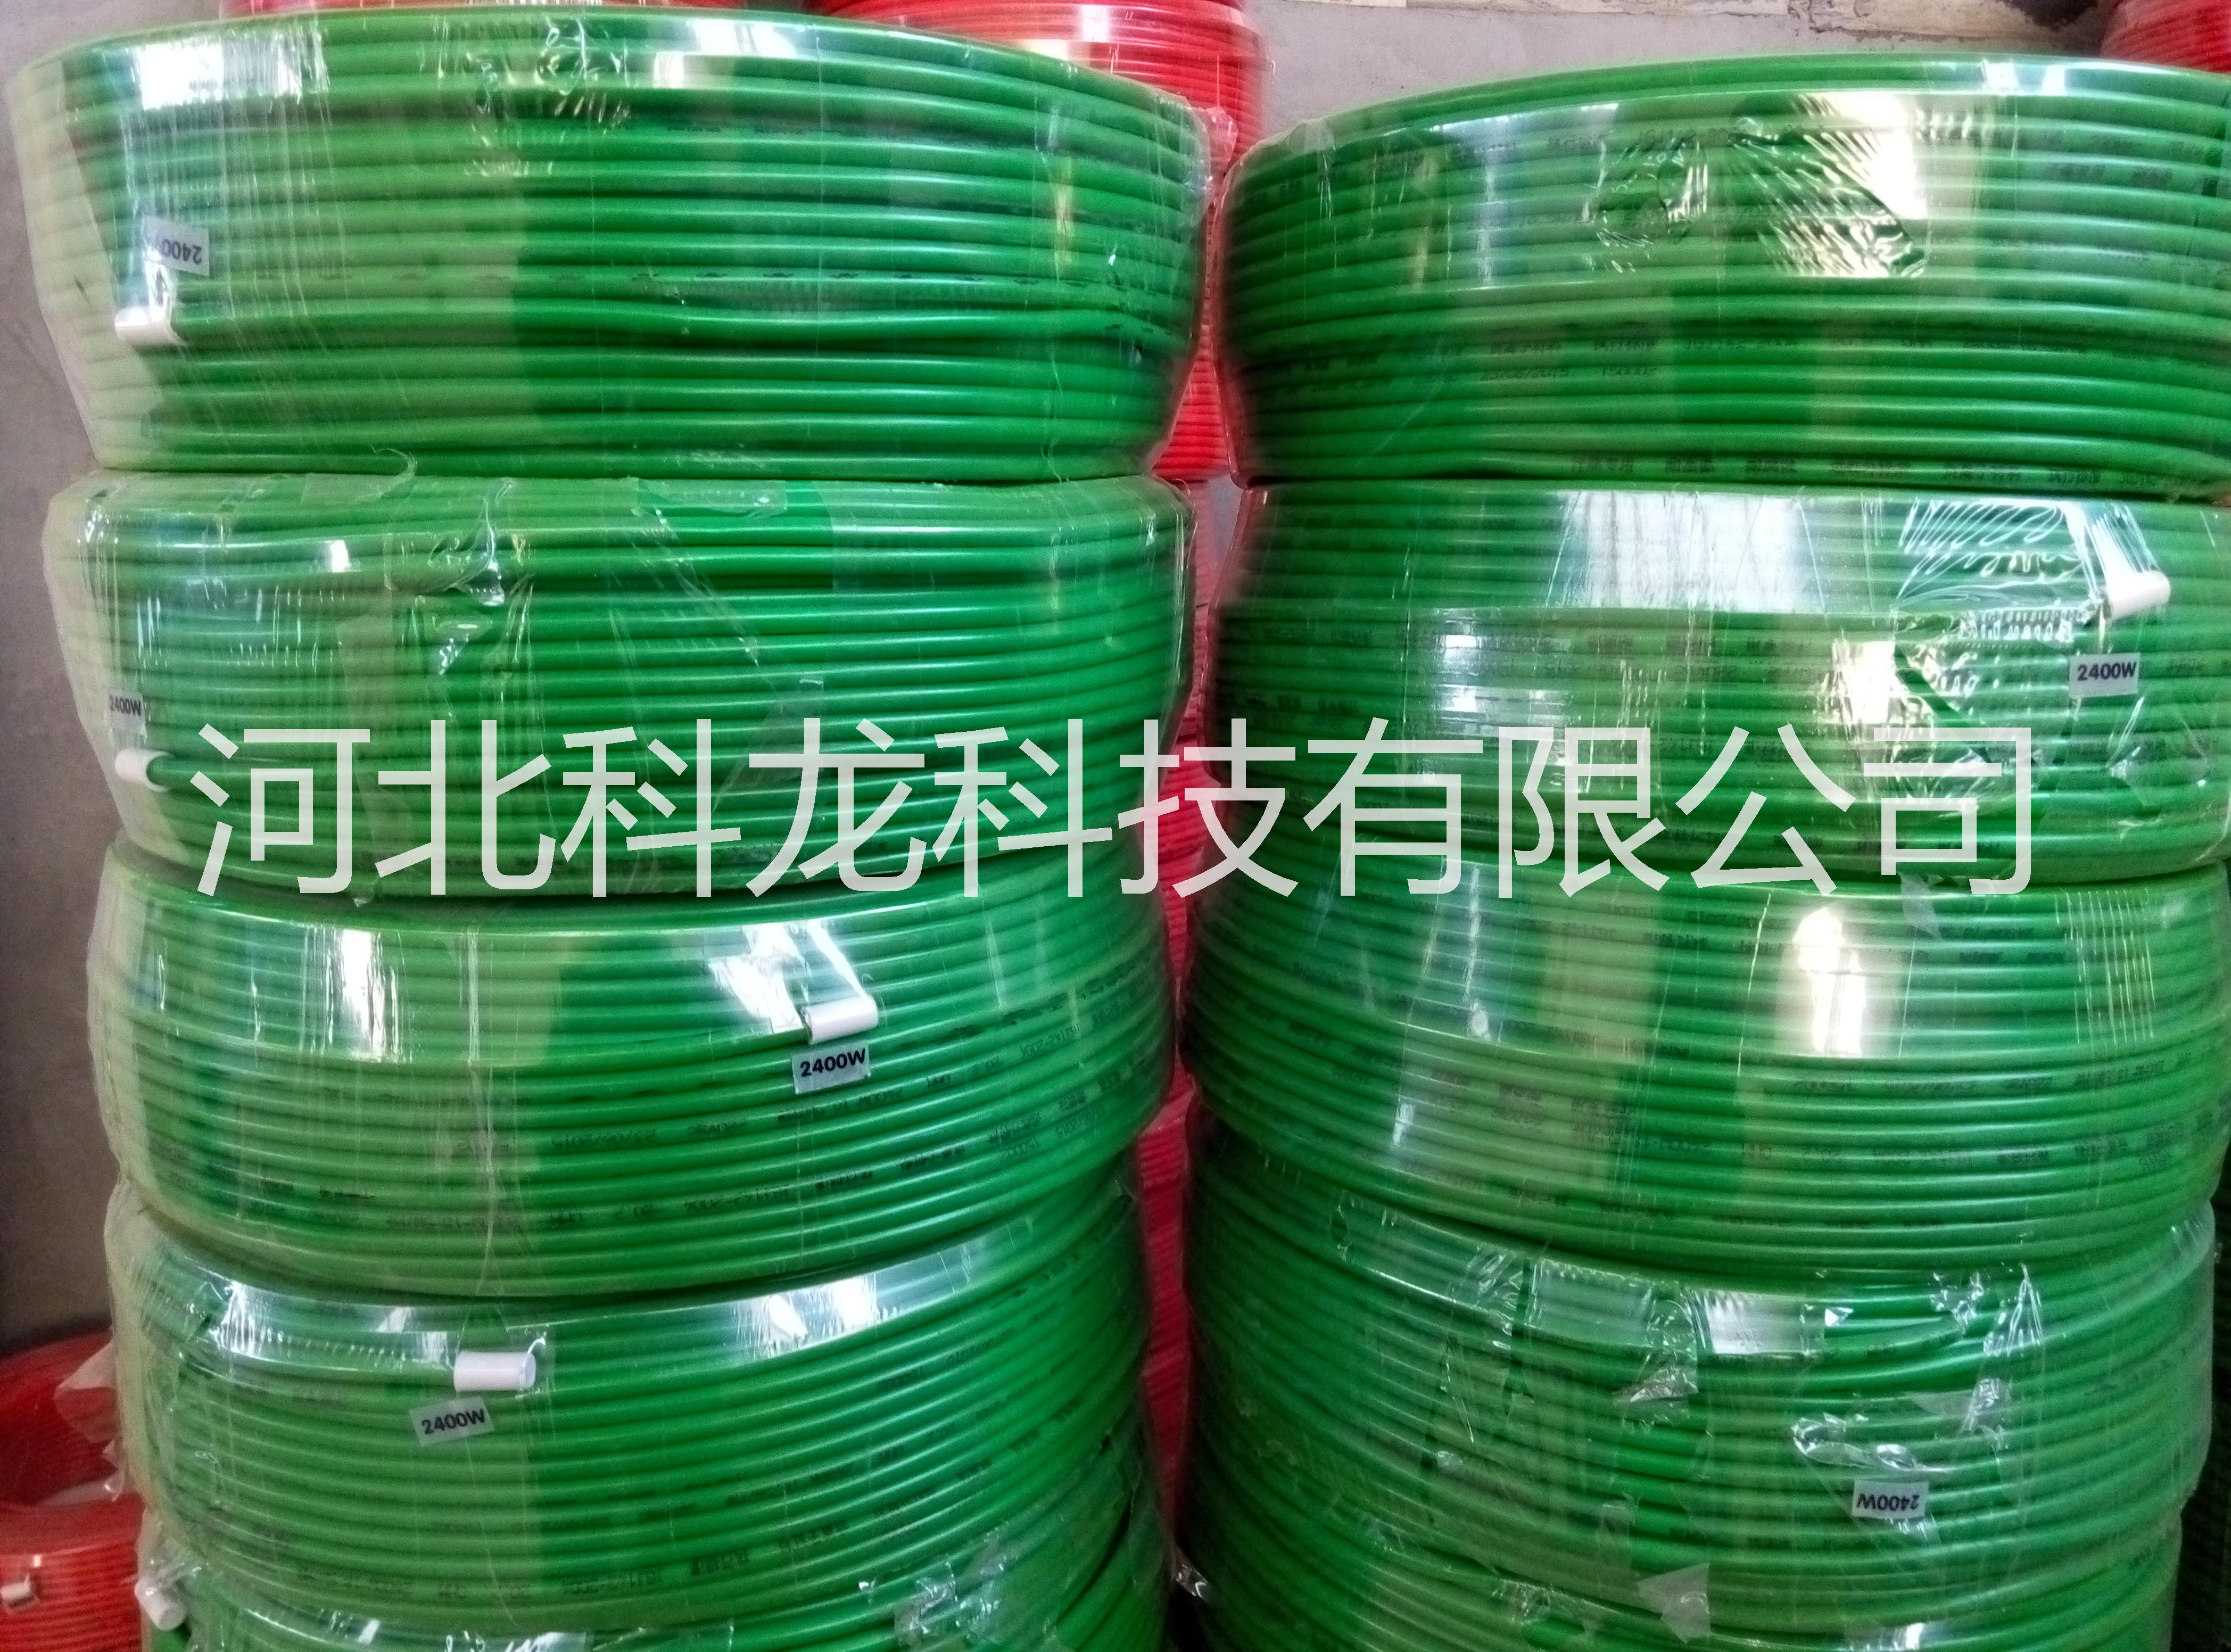 石家庄市北京碳纤维发热电缆厂家供应用于采暖的北京碳纤维发热电缆/北京碳纤维电地暖施工企业